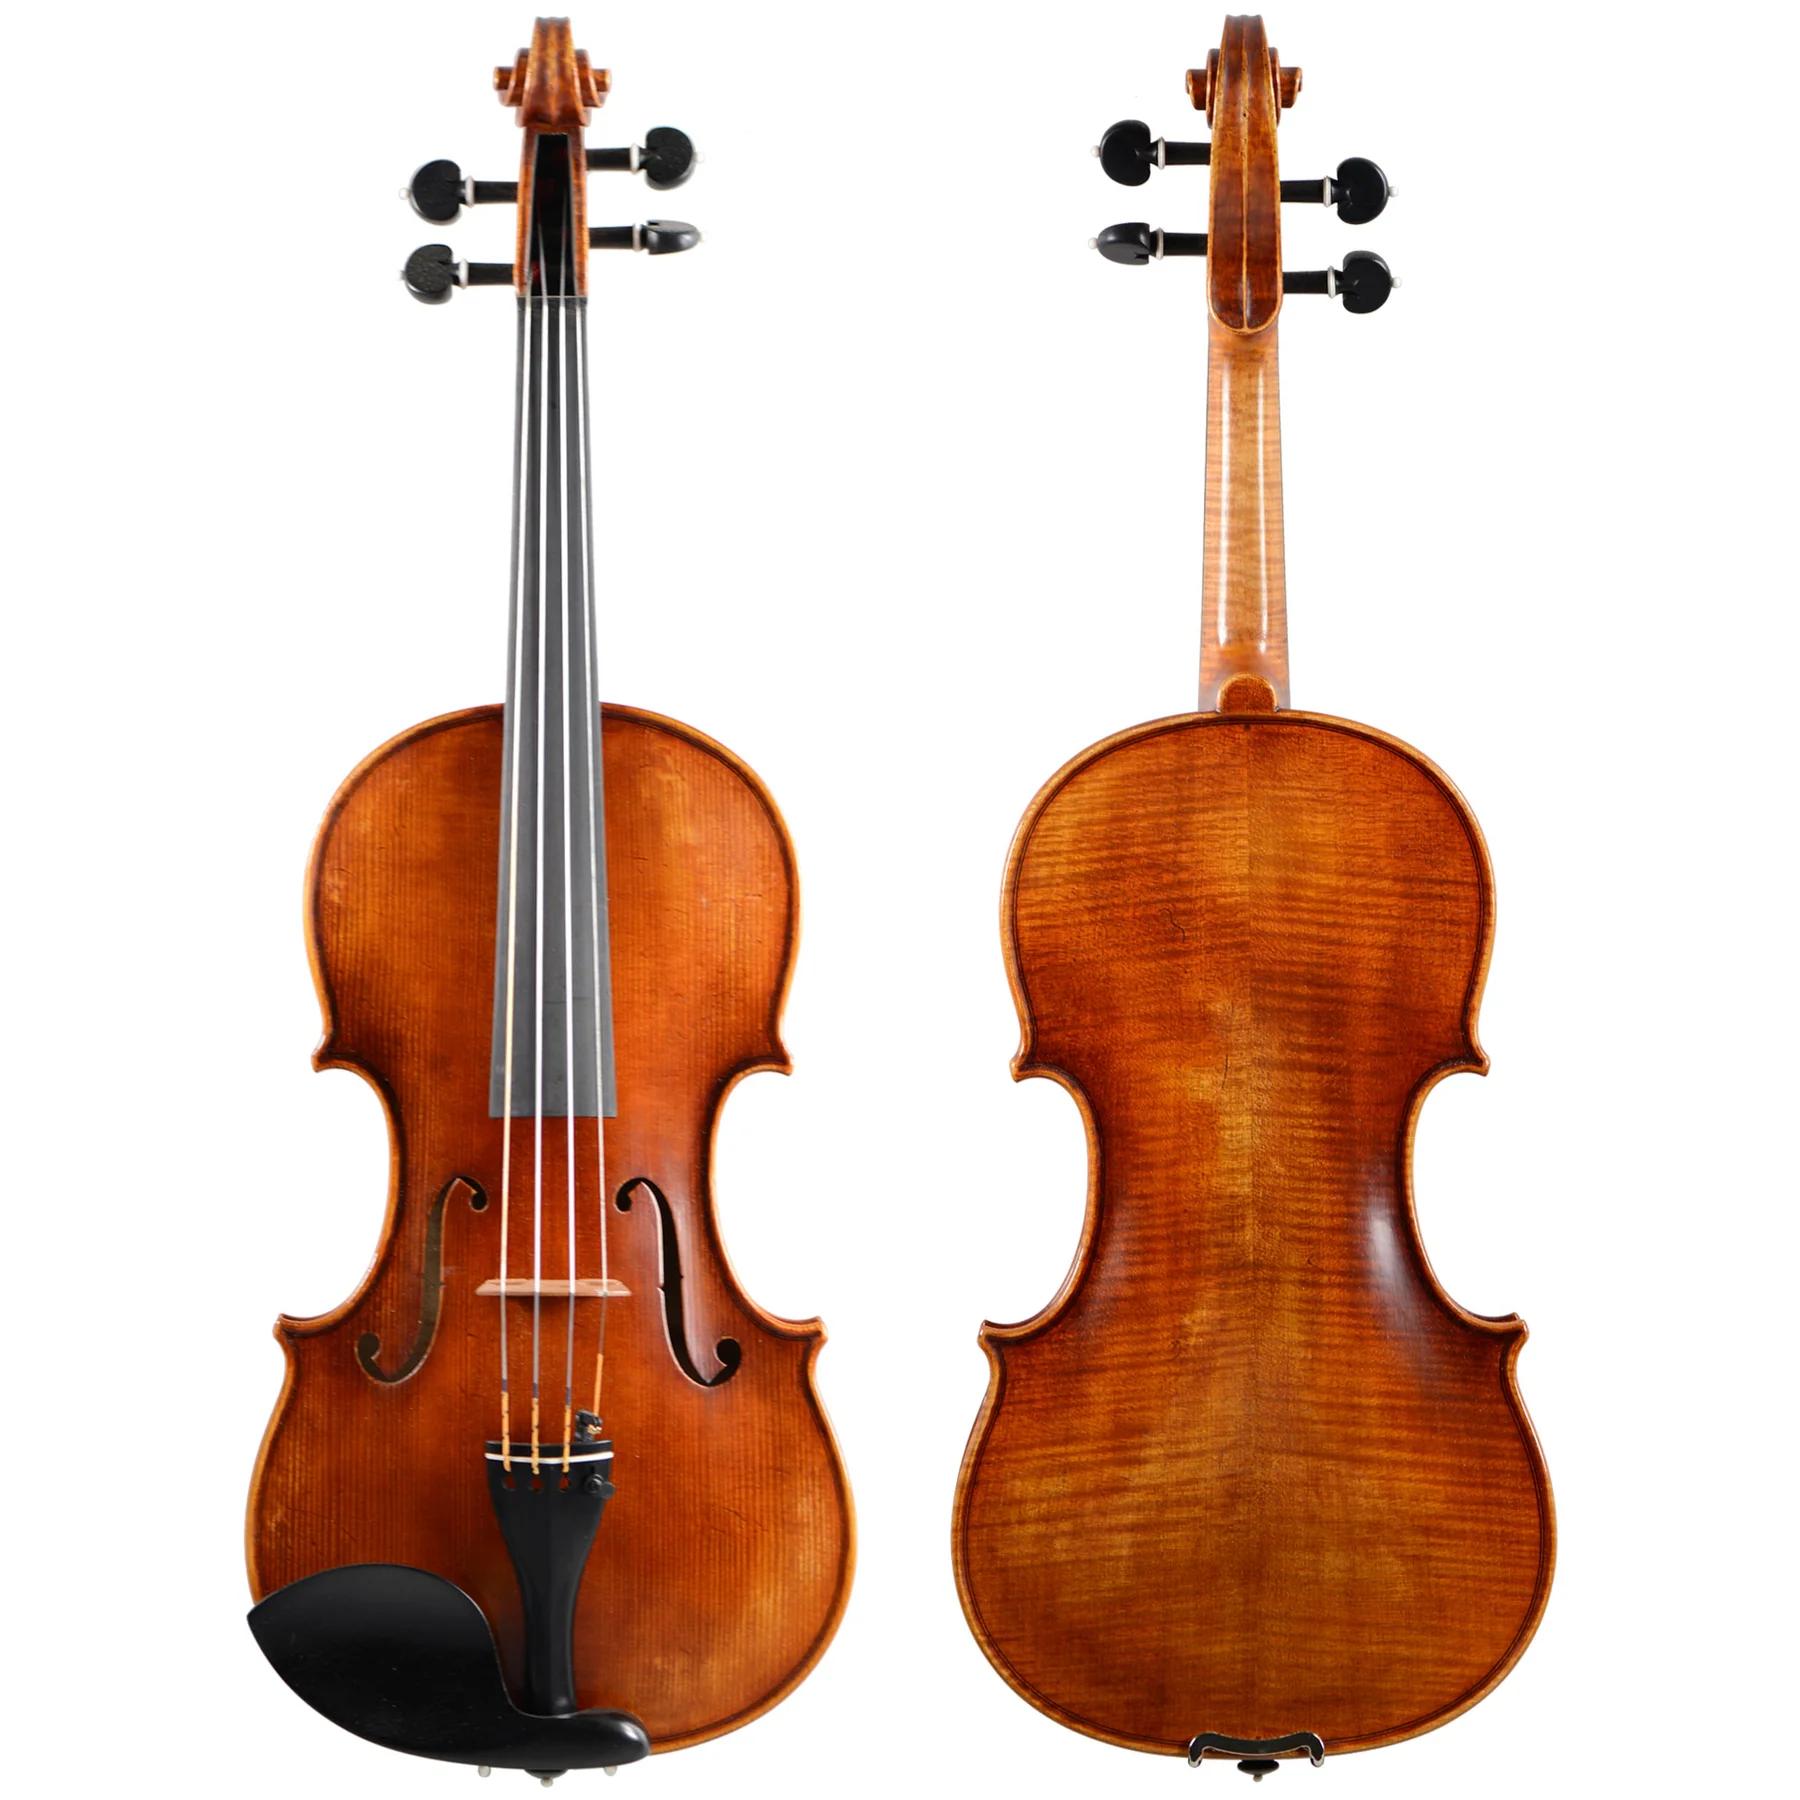 holstein violins - Are Holstein violins good